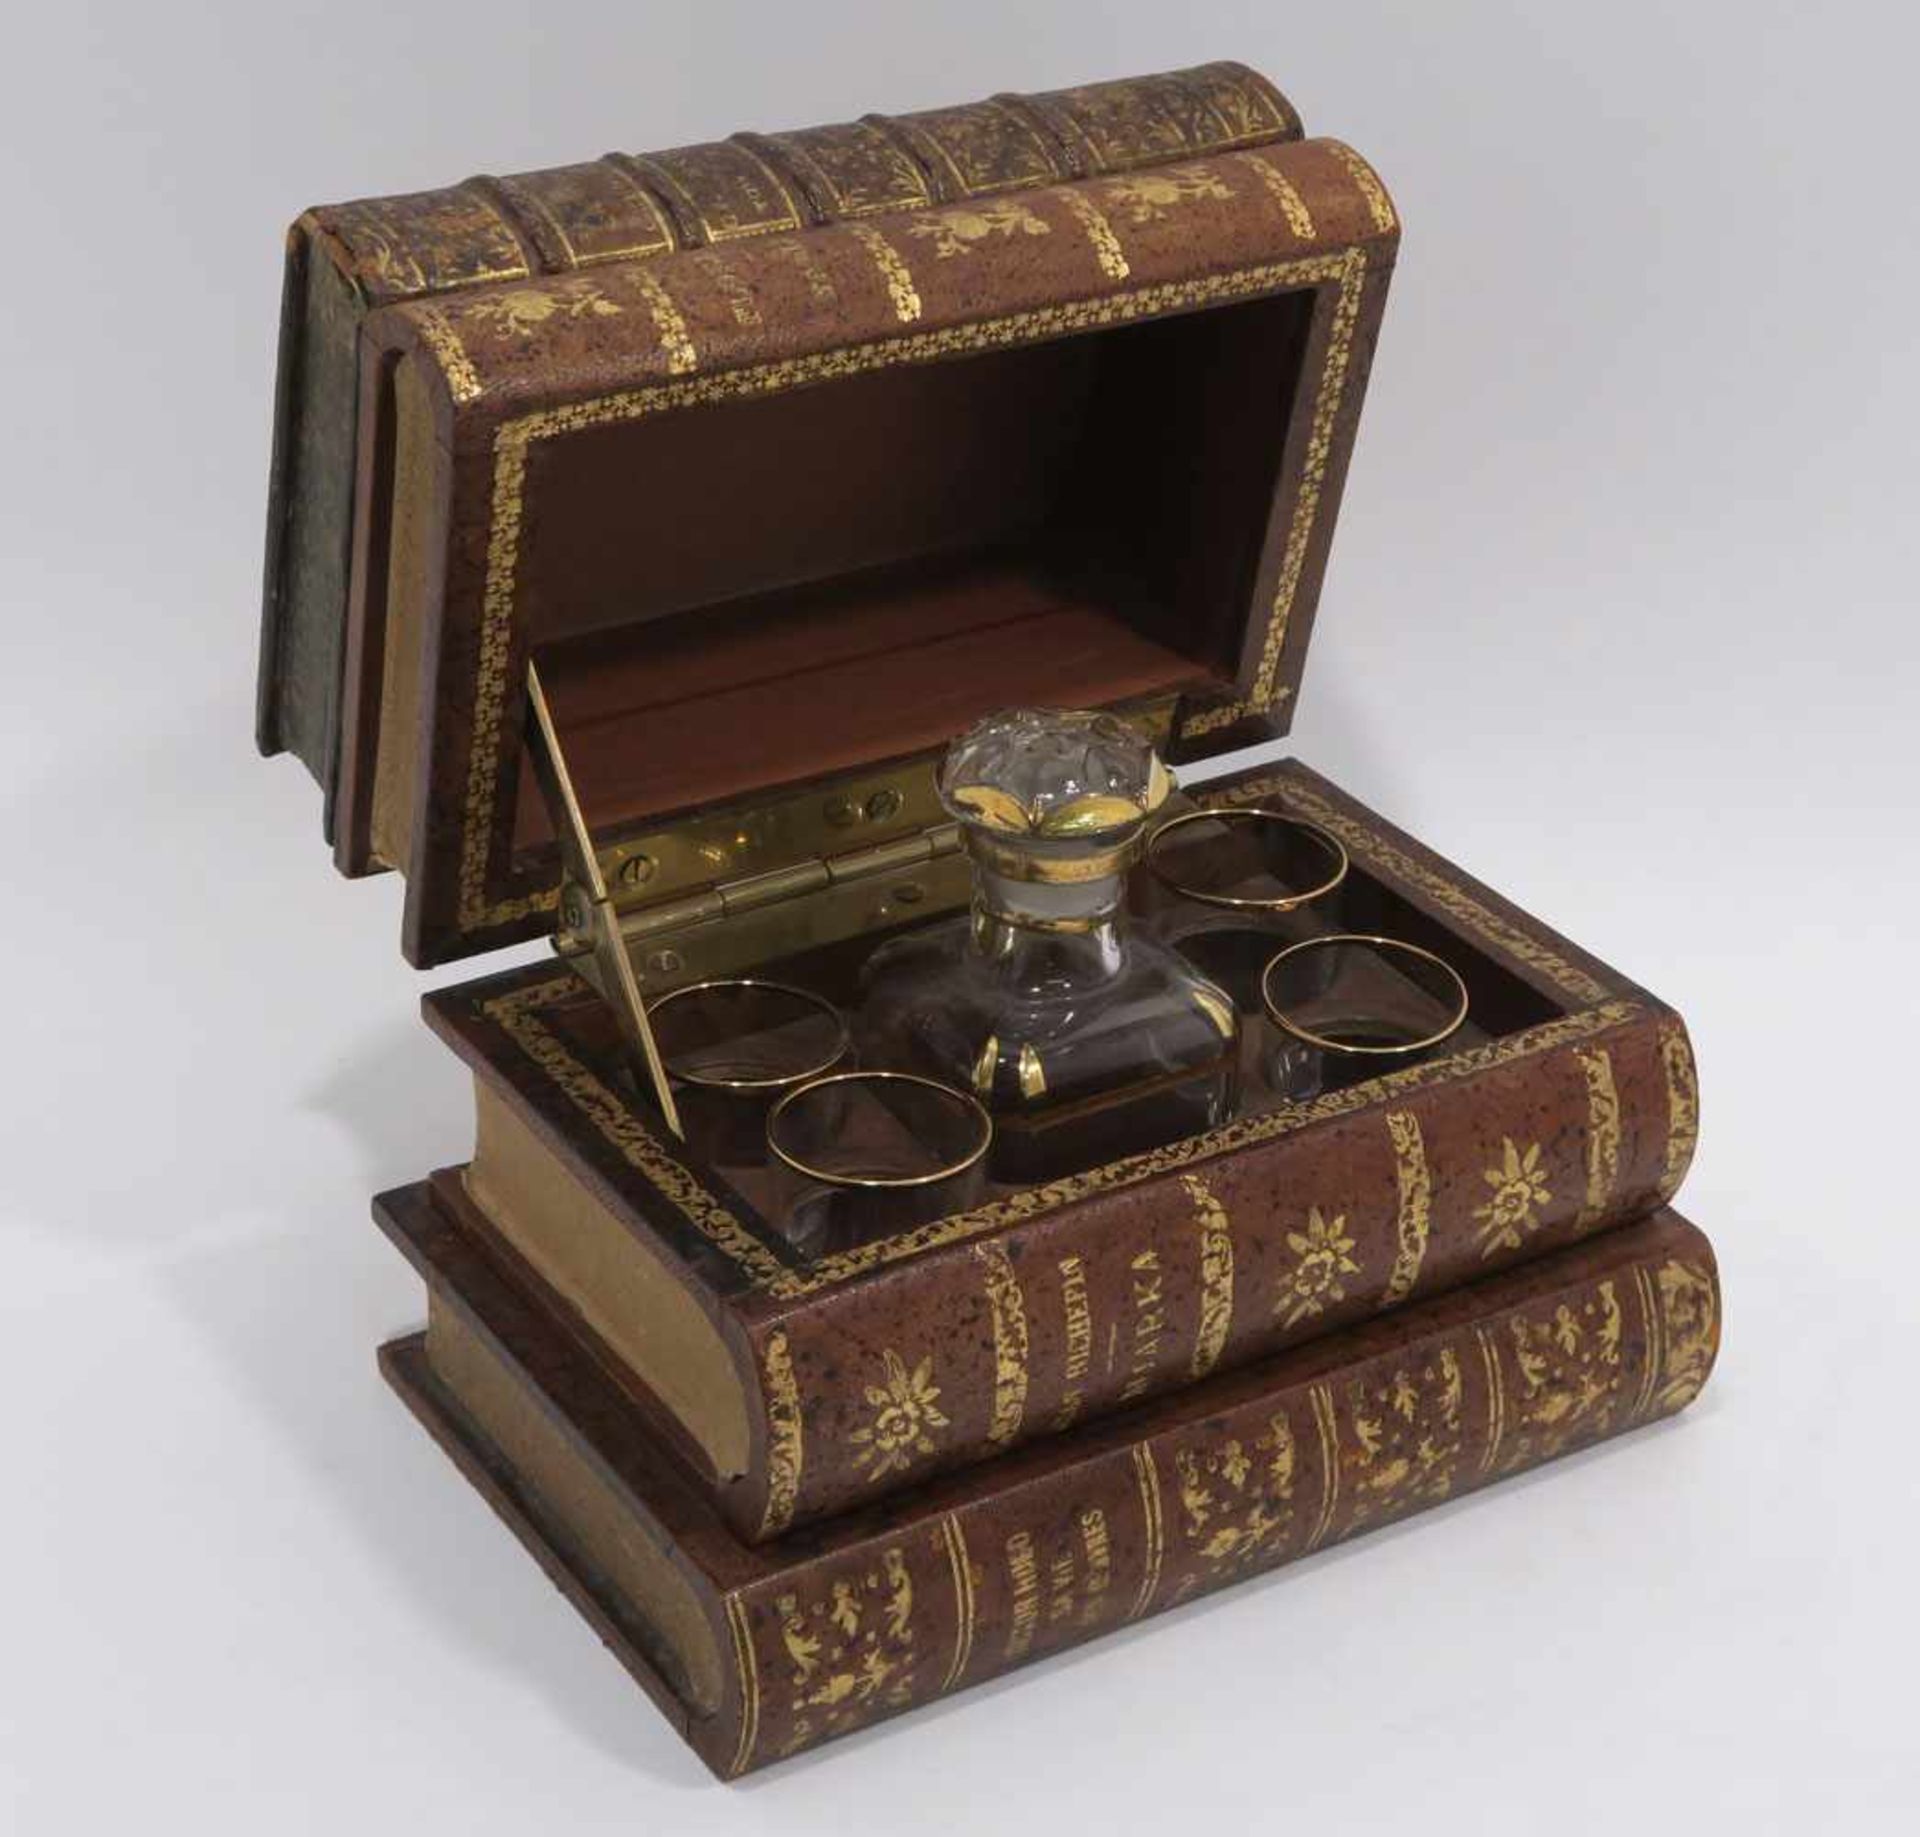 Schatulle mit LikörserviceSchatulle in Form eines Bücherstapels mit Ledereinbänden. Innen kleine